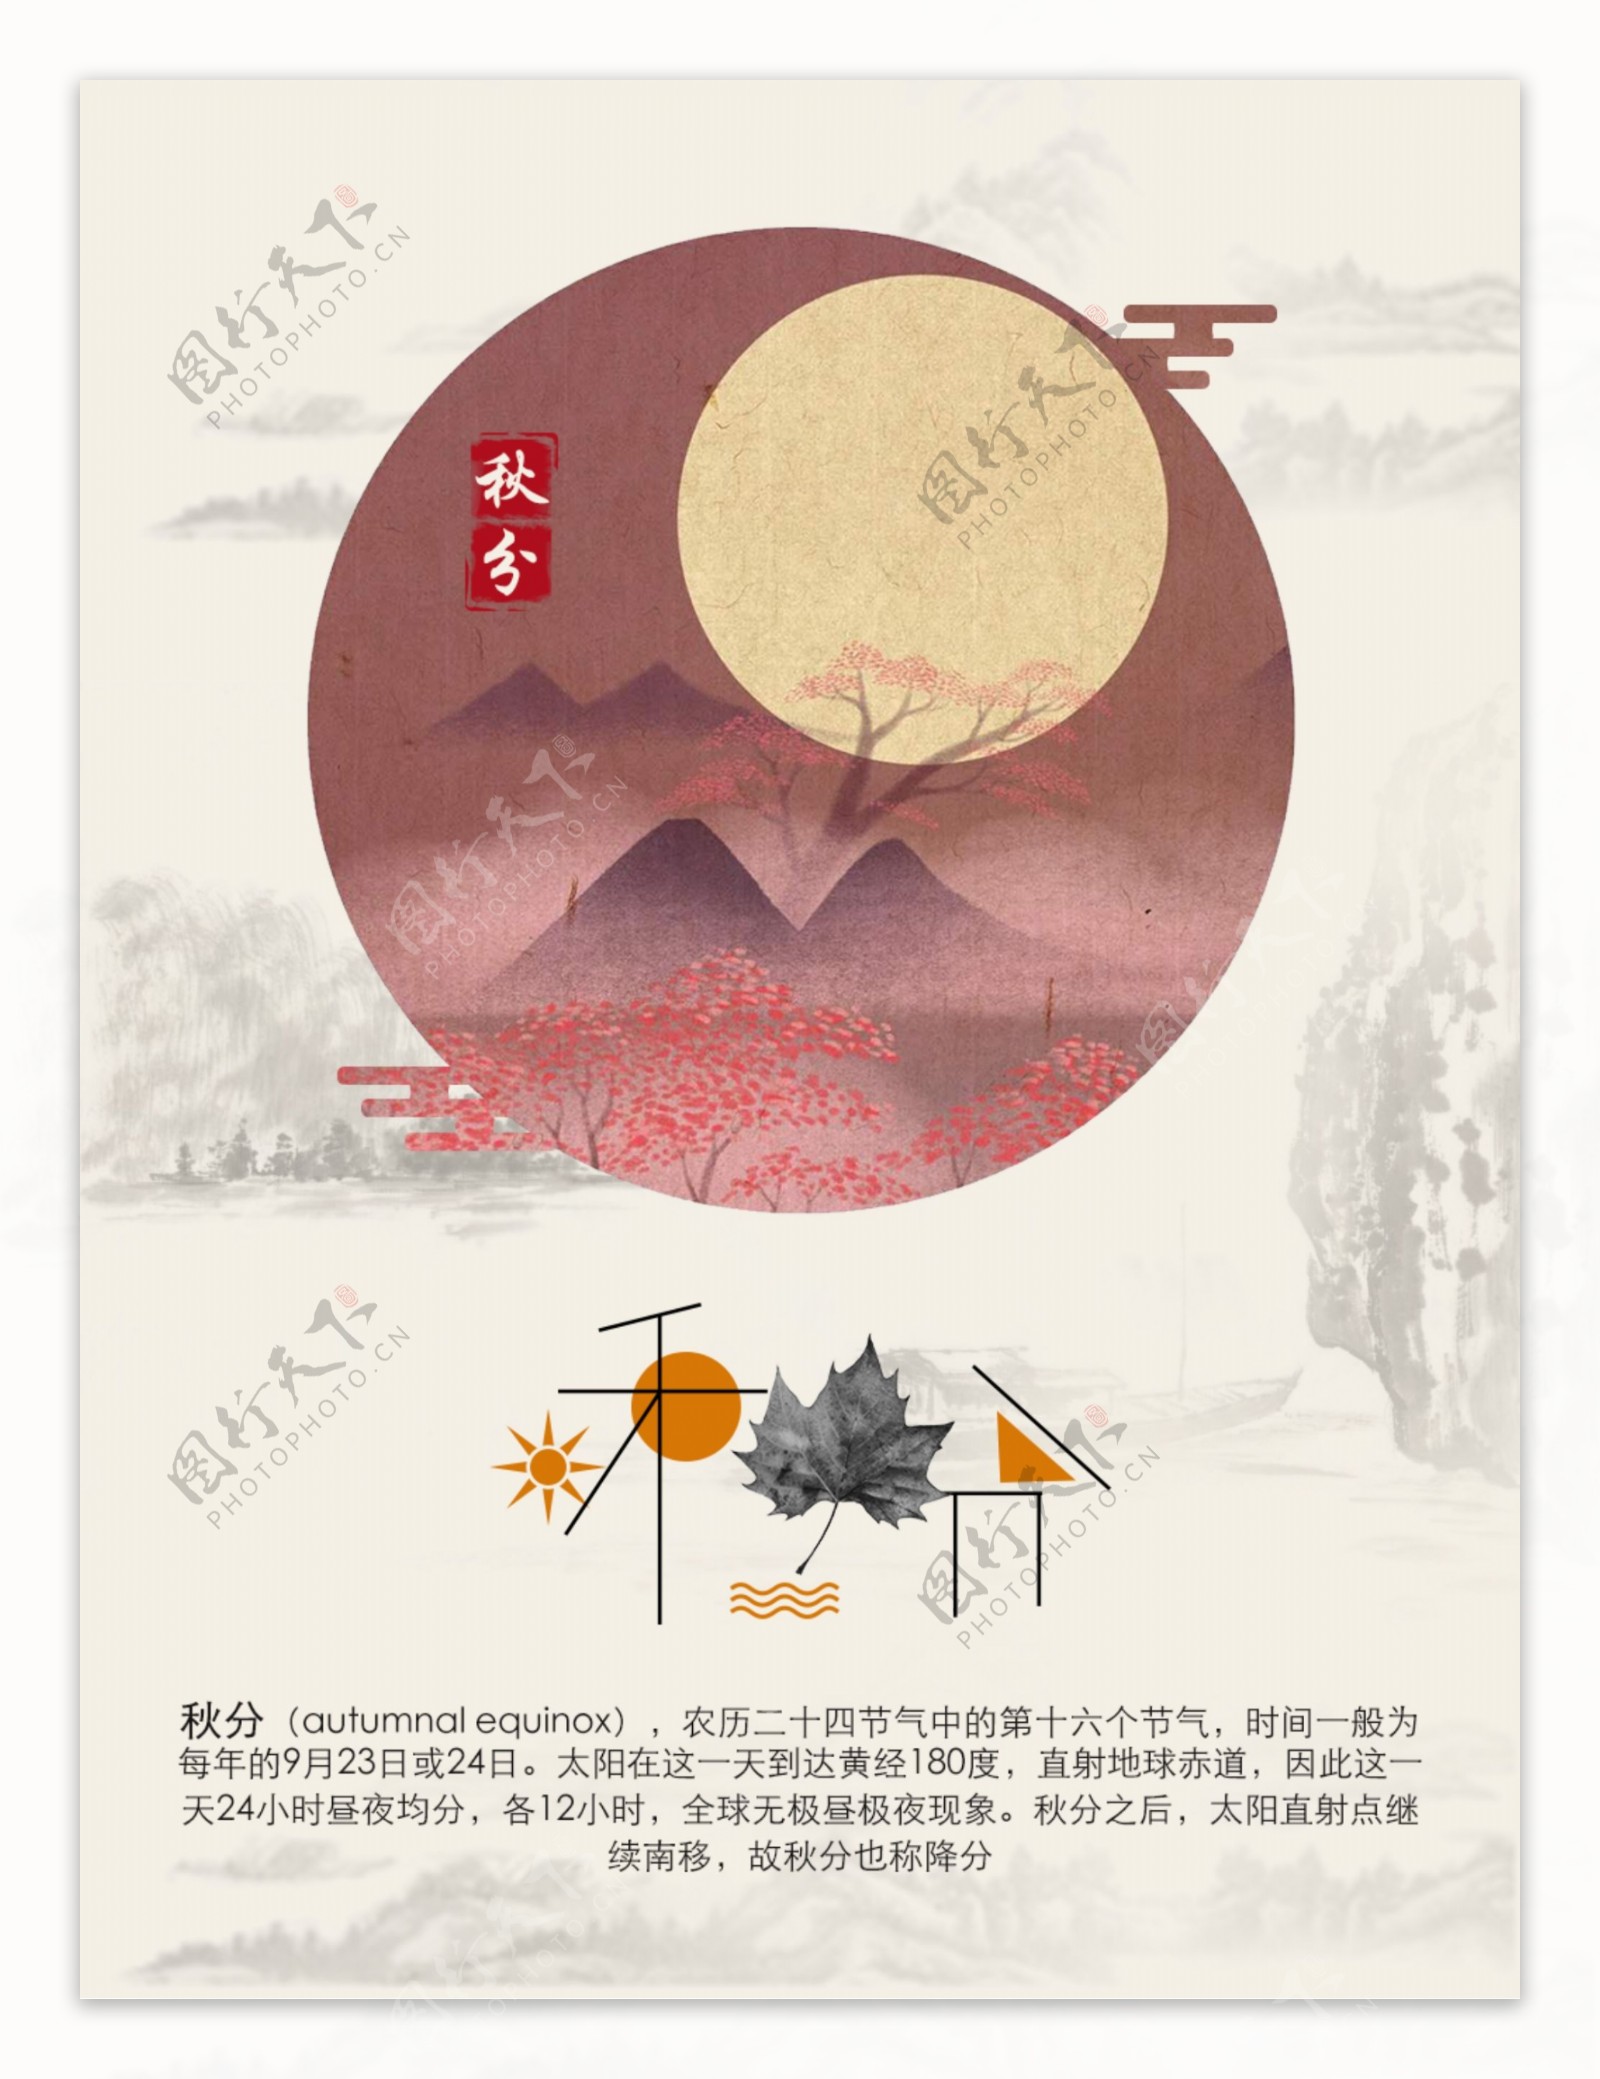 中国二十四节气之秋分古风古韵创意海报设计